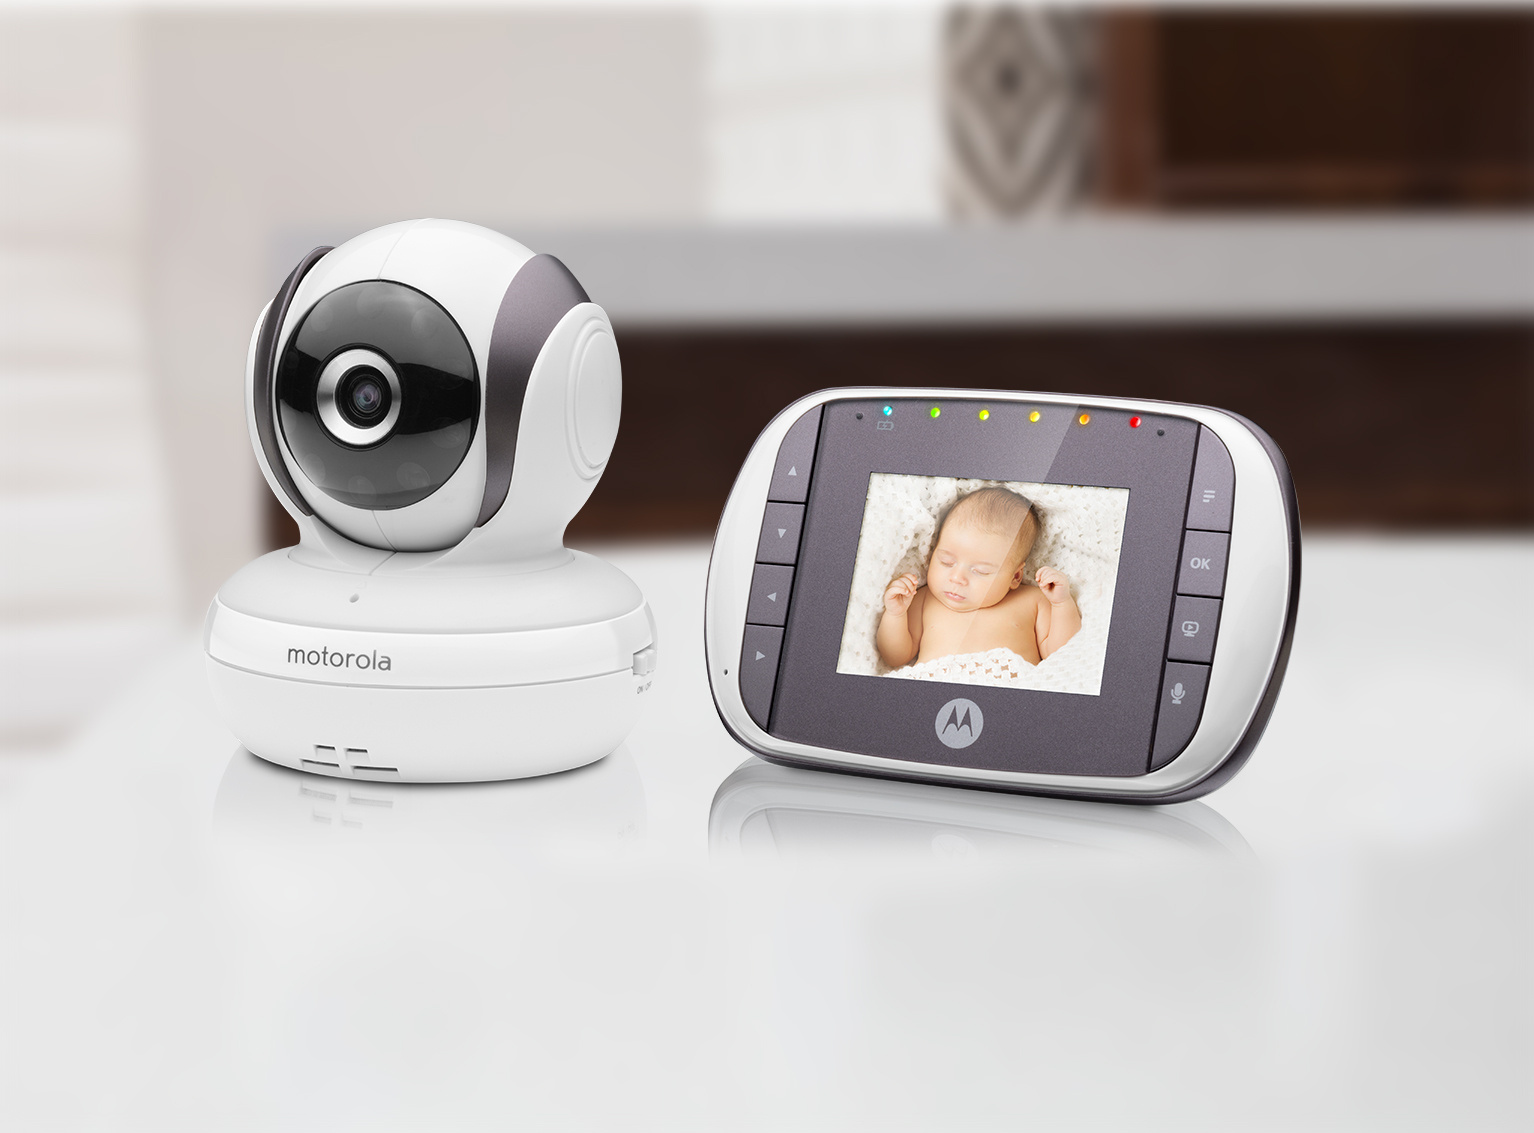 جهاز موتورولا لمراقبة الطفل عن بعد بالصوت والصورة mbp35s